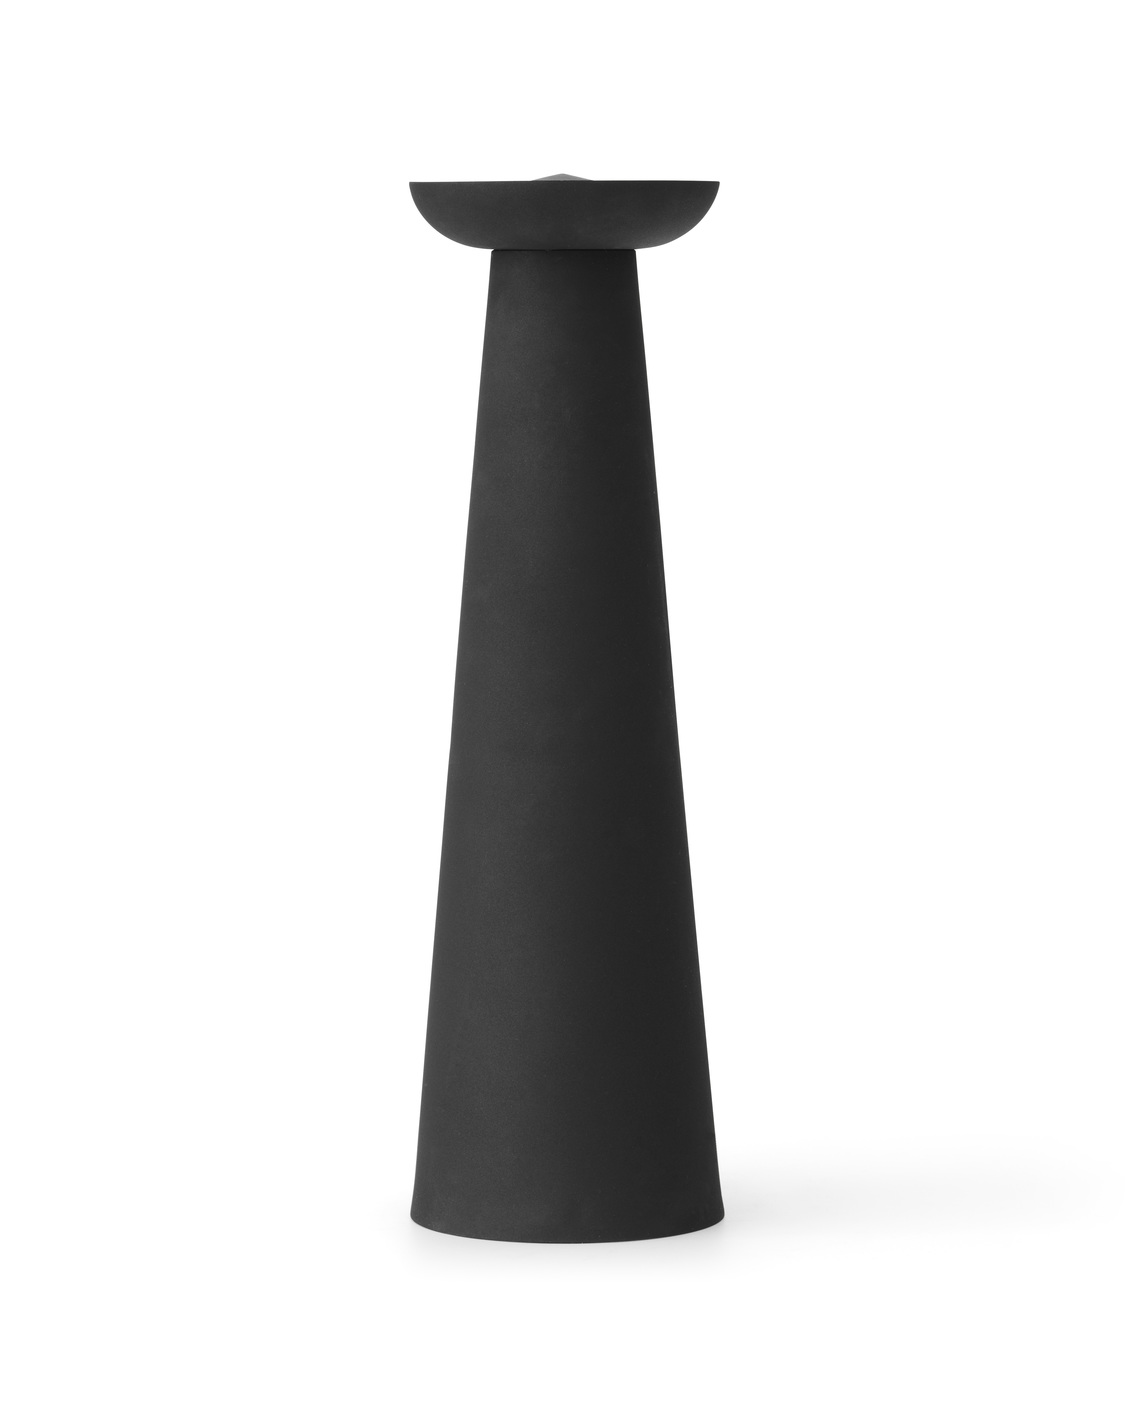 Meira Oil Lantern, h53 cm, black